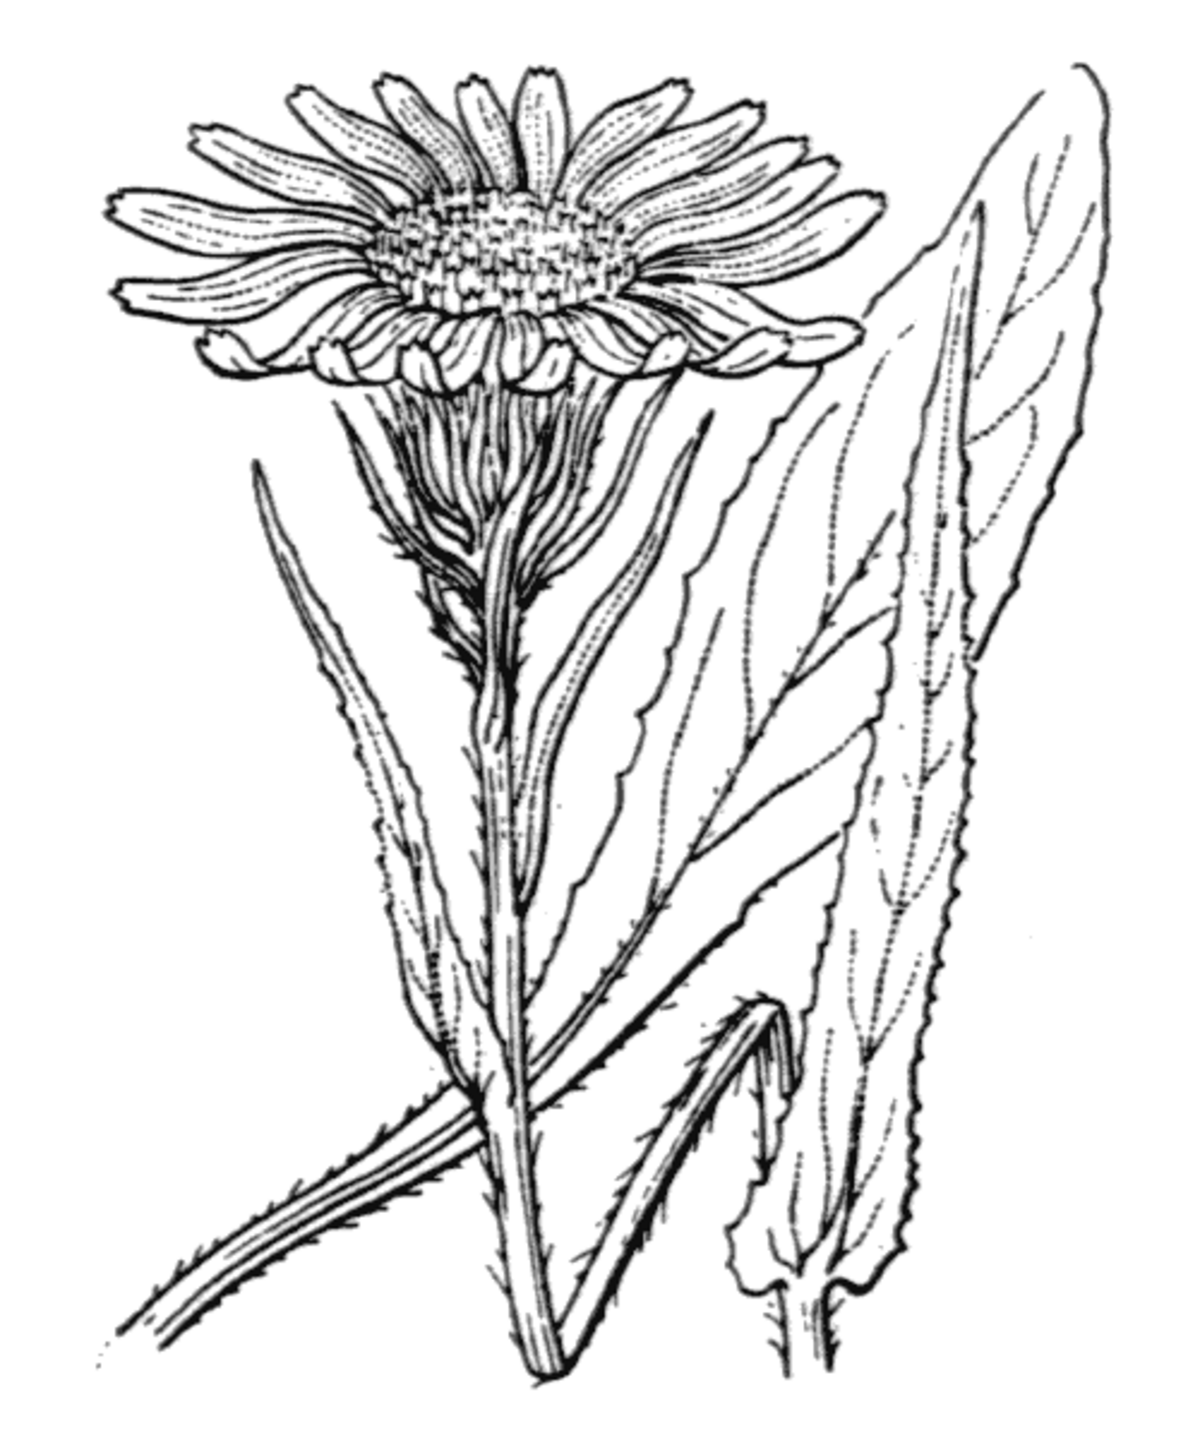  Senecio doronicum, Gravure de H. Coste